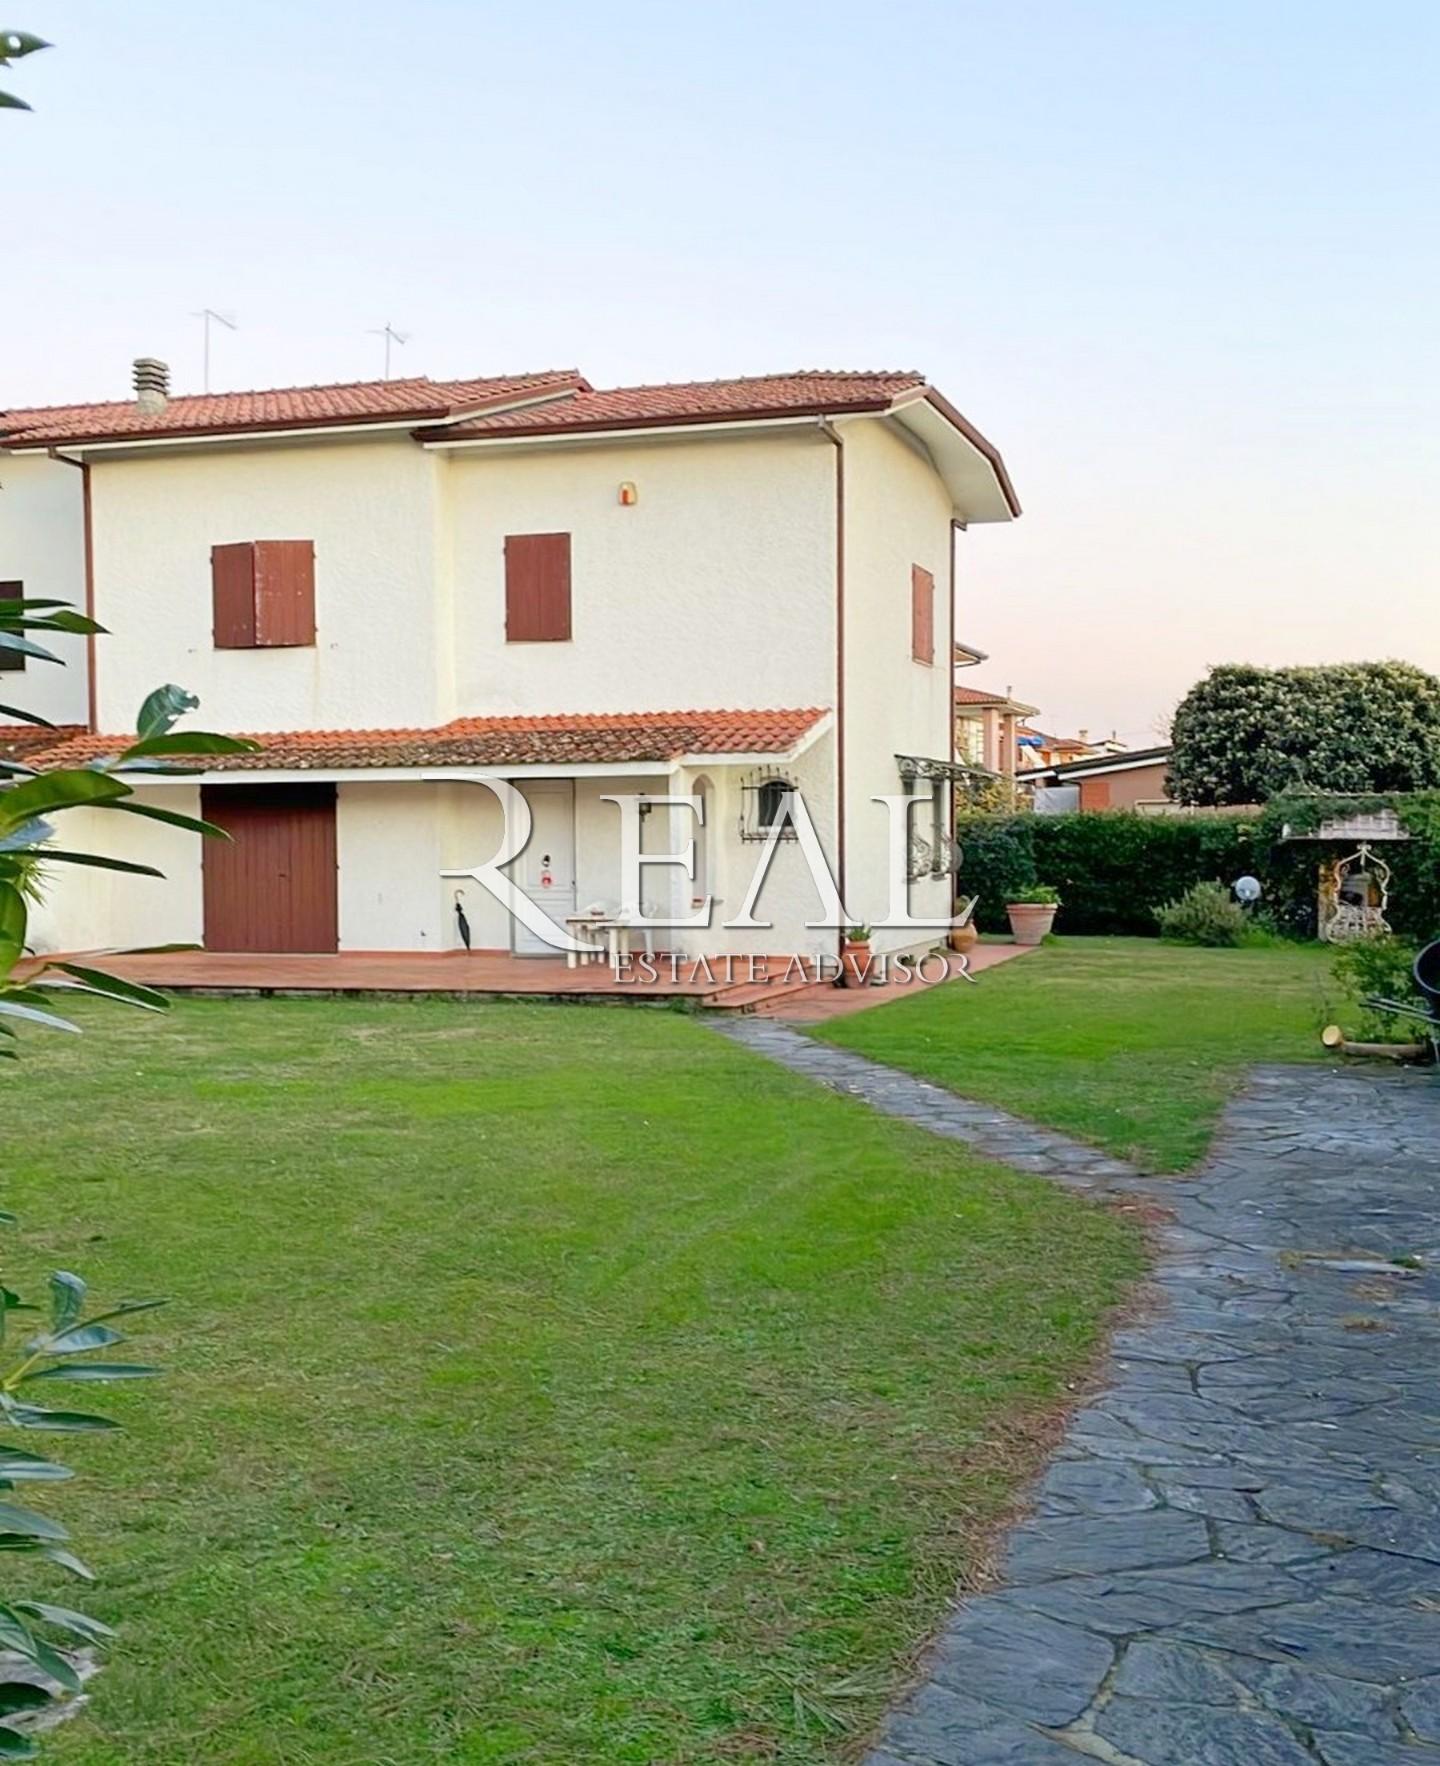 Villa Bifamiliare in vendita a Seravezza, 4 locali, prezzo € 530.000 | PortaleAgenzieImmobiliari.it